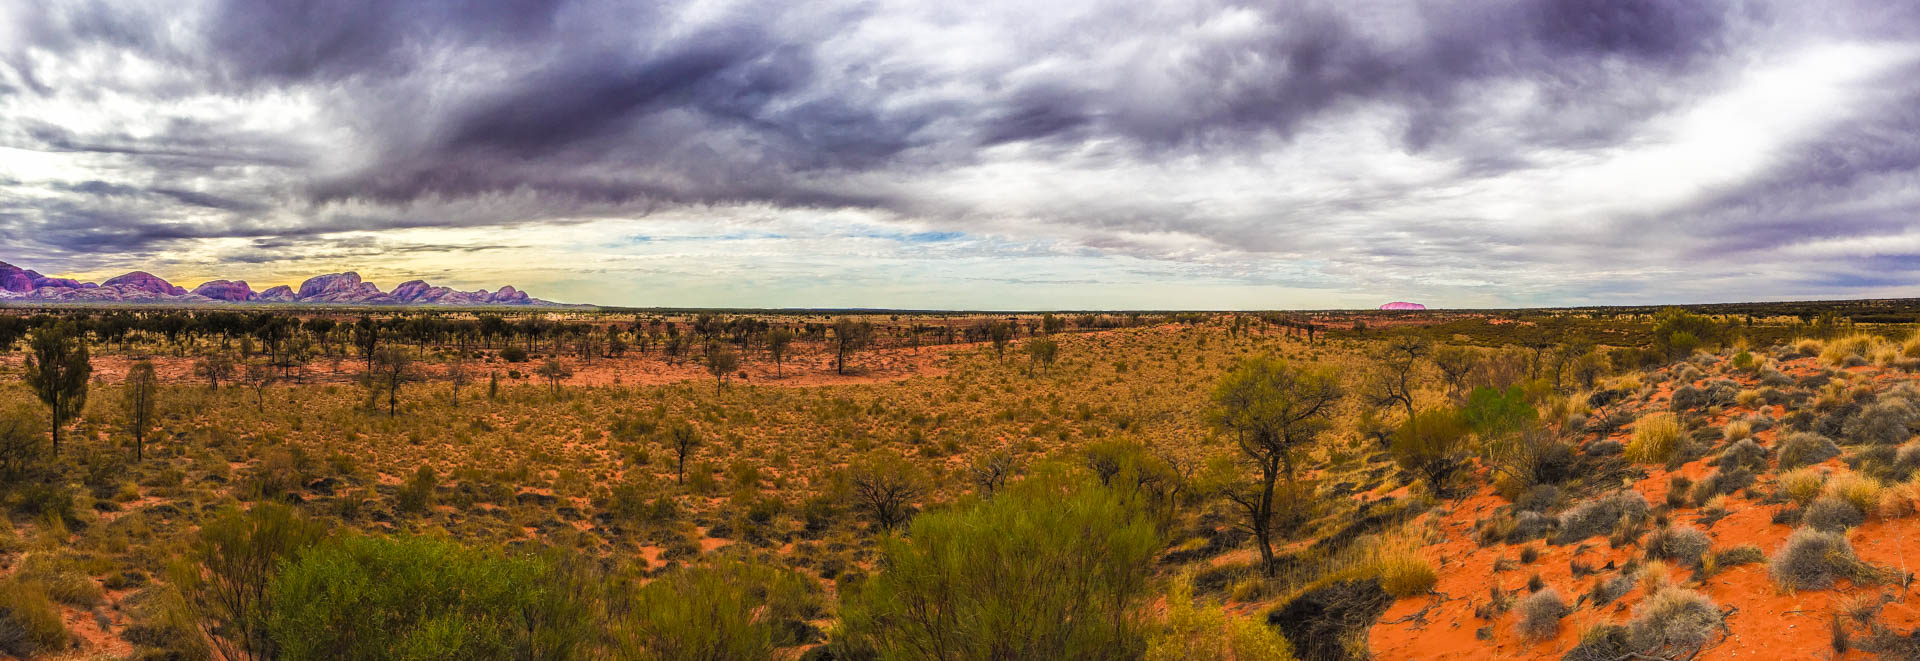 Between the Olgas and Uluru